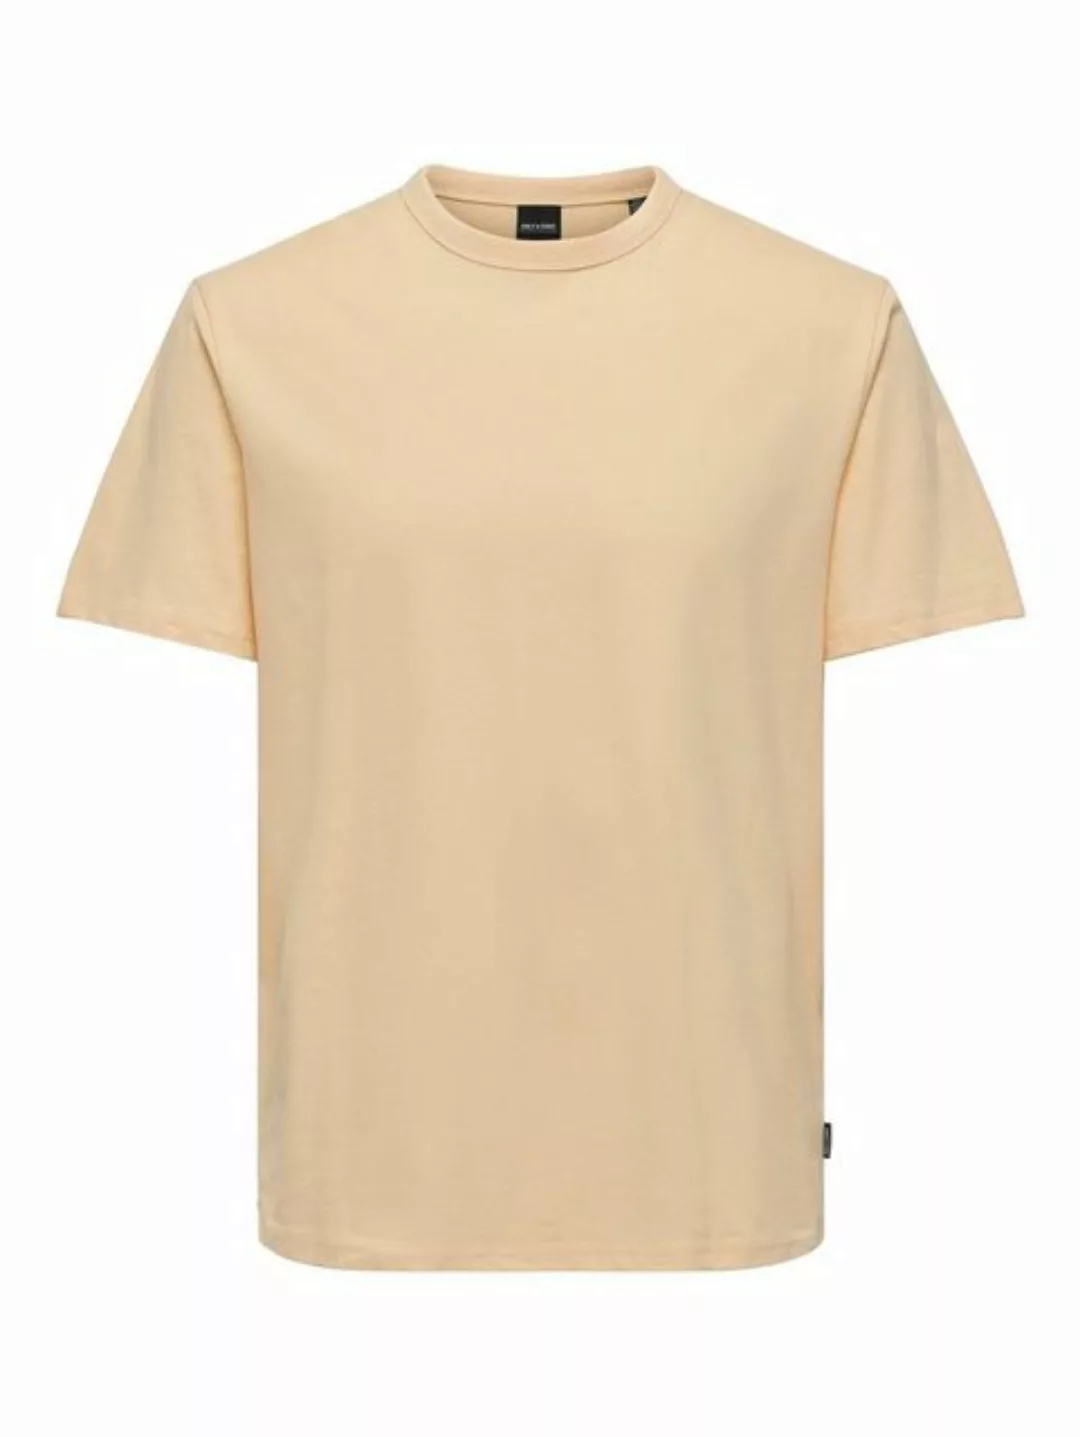 ONLY & SONS T-Shirt Weiches Rundhals T-Shirt Kurzarm ONSSMART Basic Shirt ( günstig online kaufen